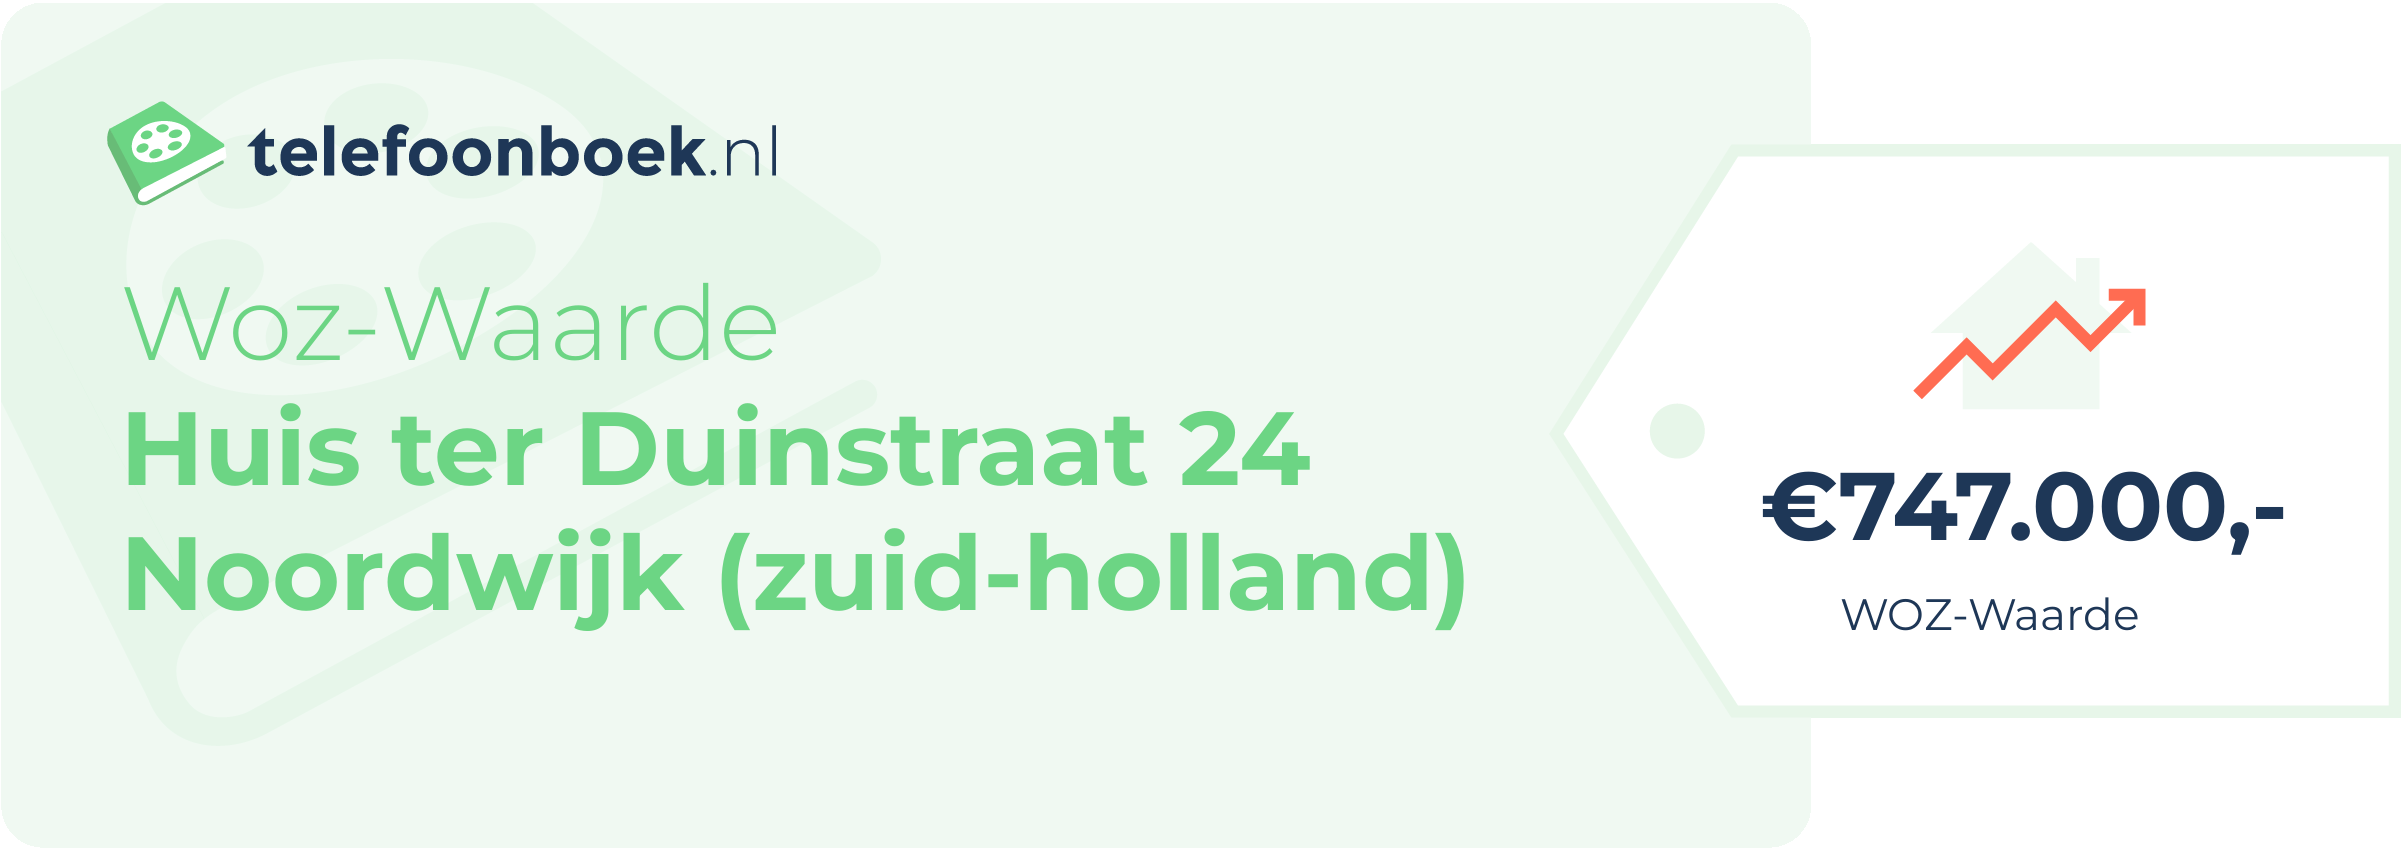 WOZ-waarde Huis Ter Duinstraat 24 Noordwijk (Zuid-Holland)